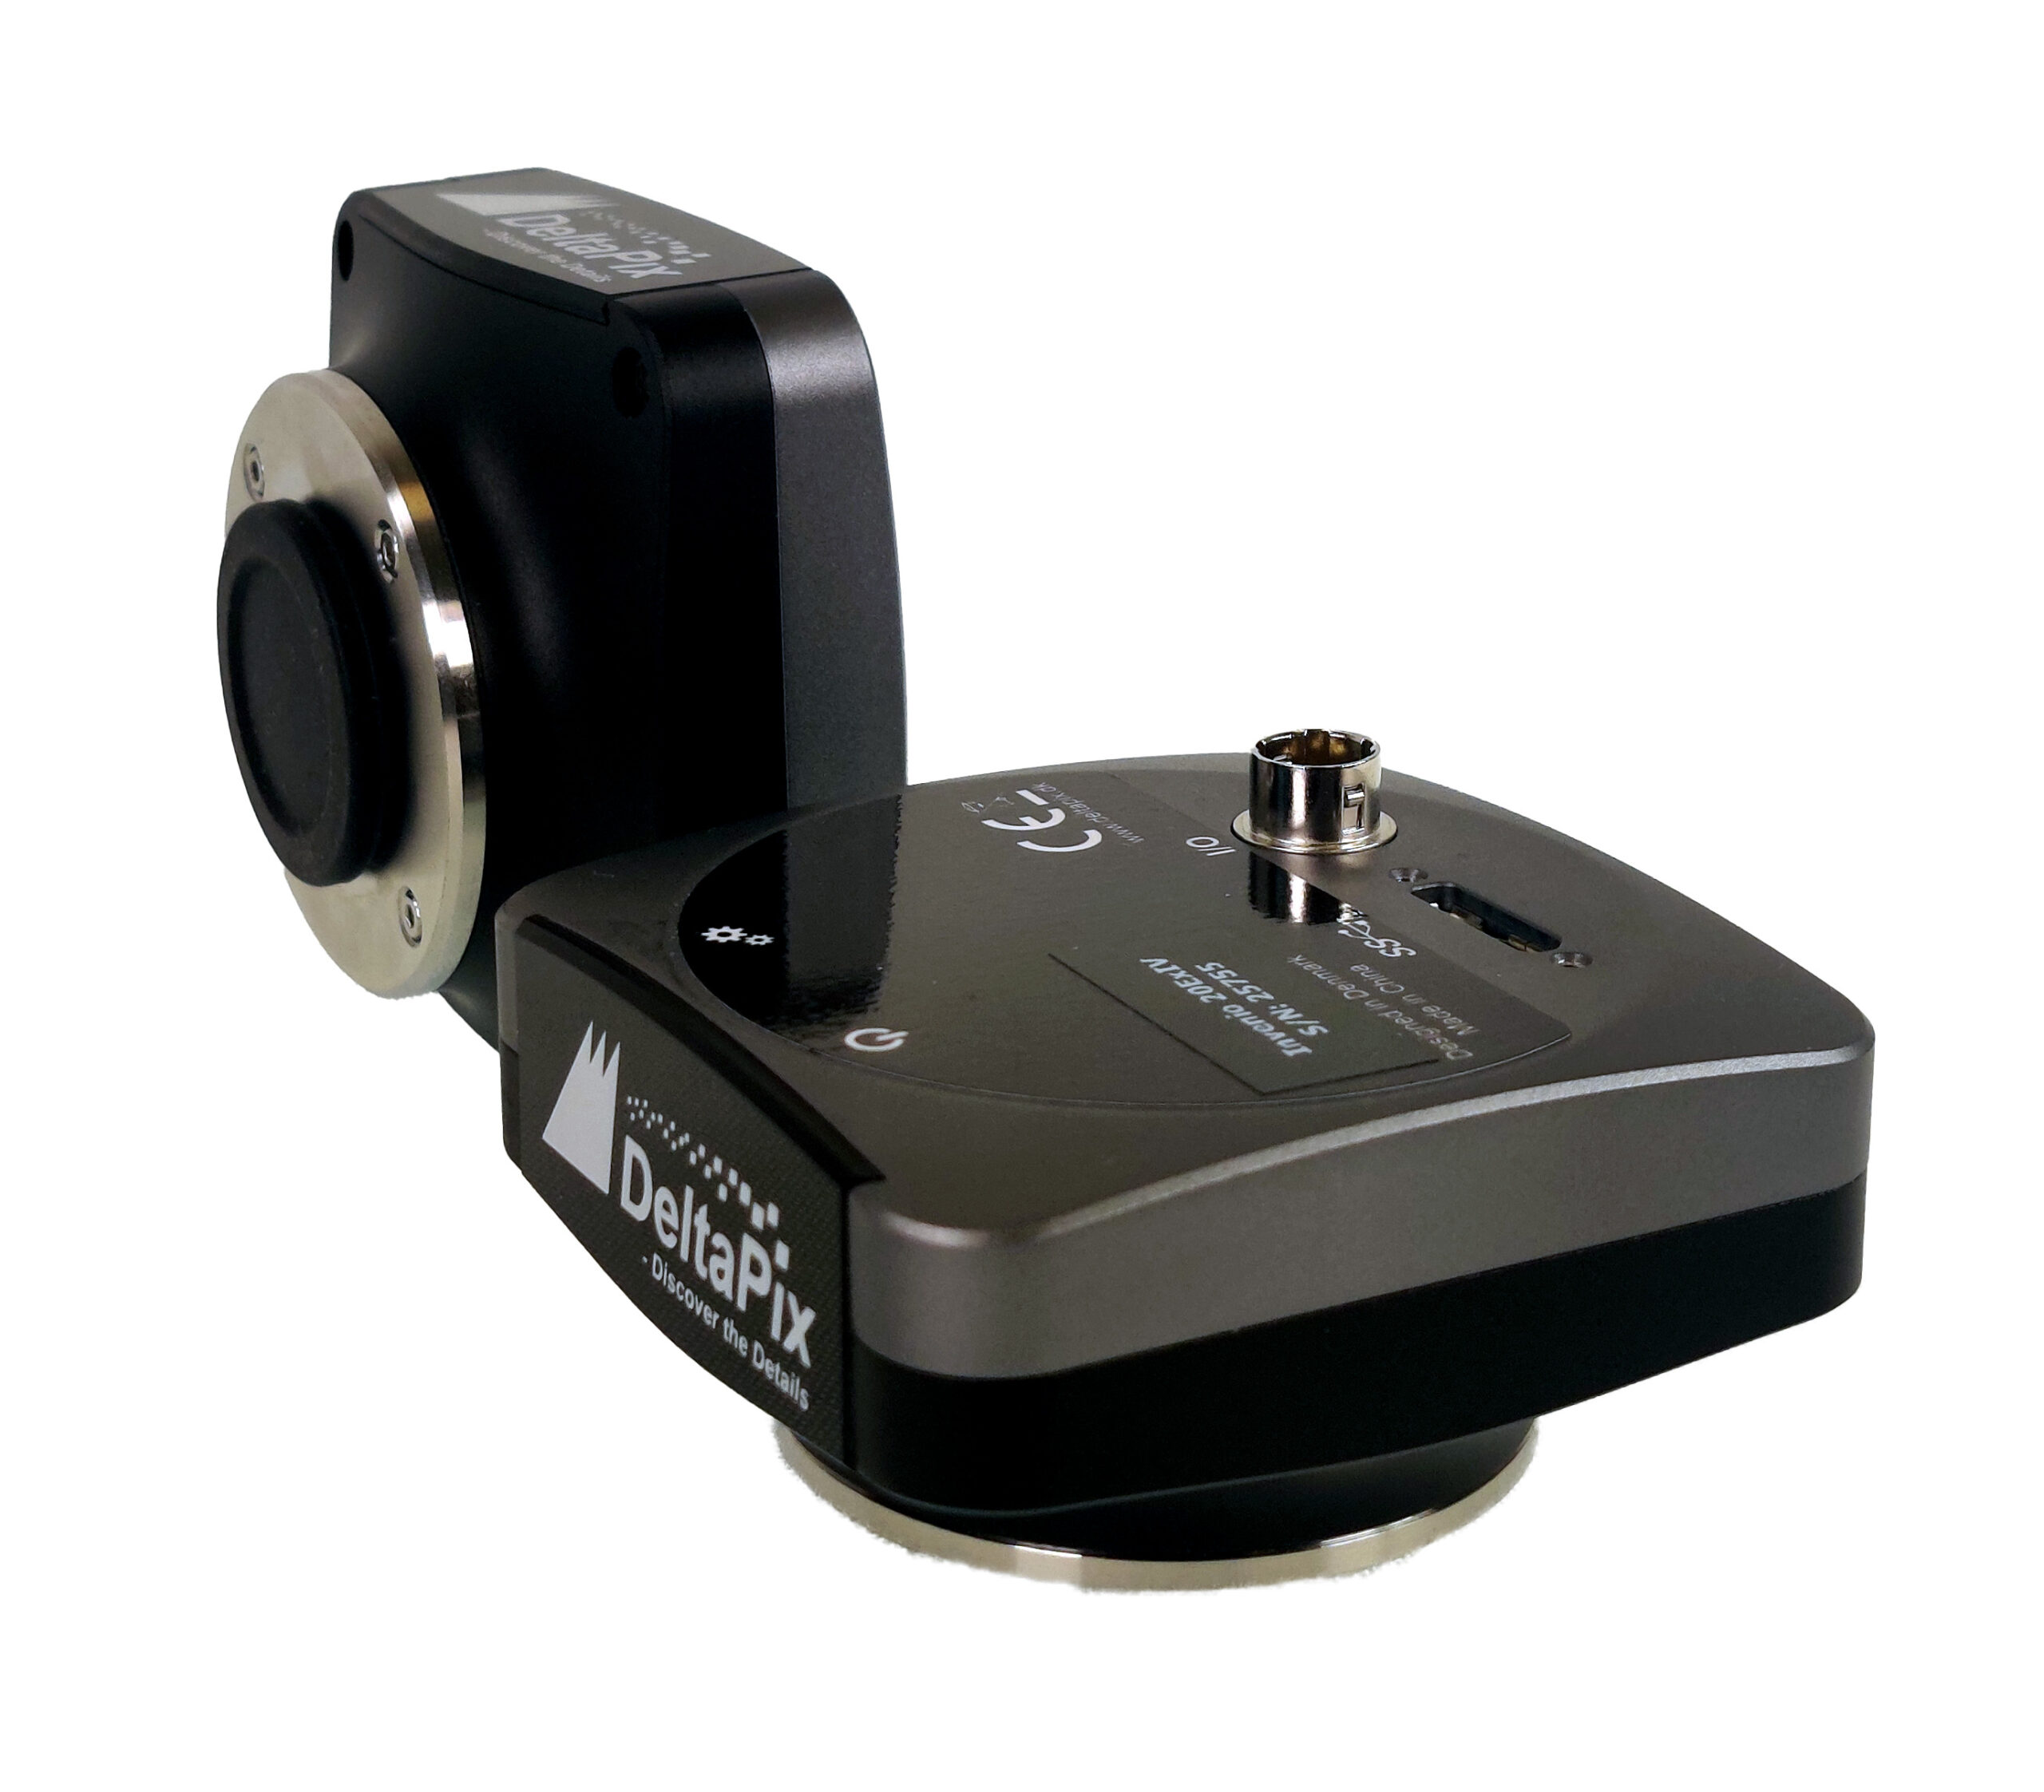 Microscope camera Invenio IV